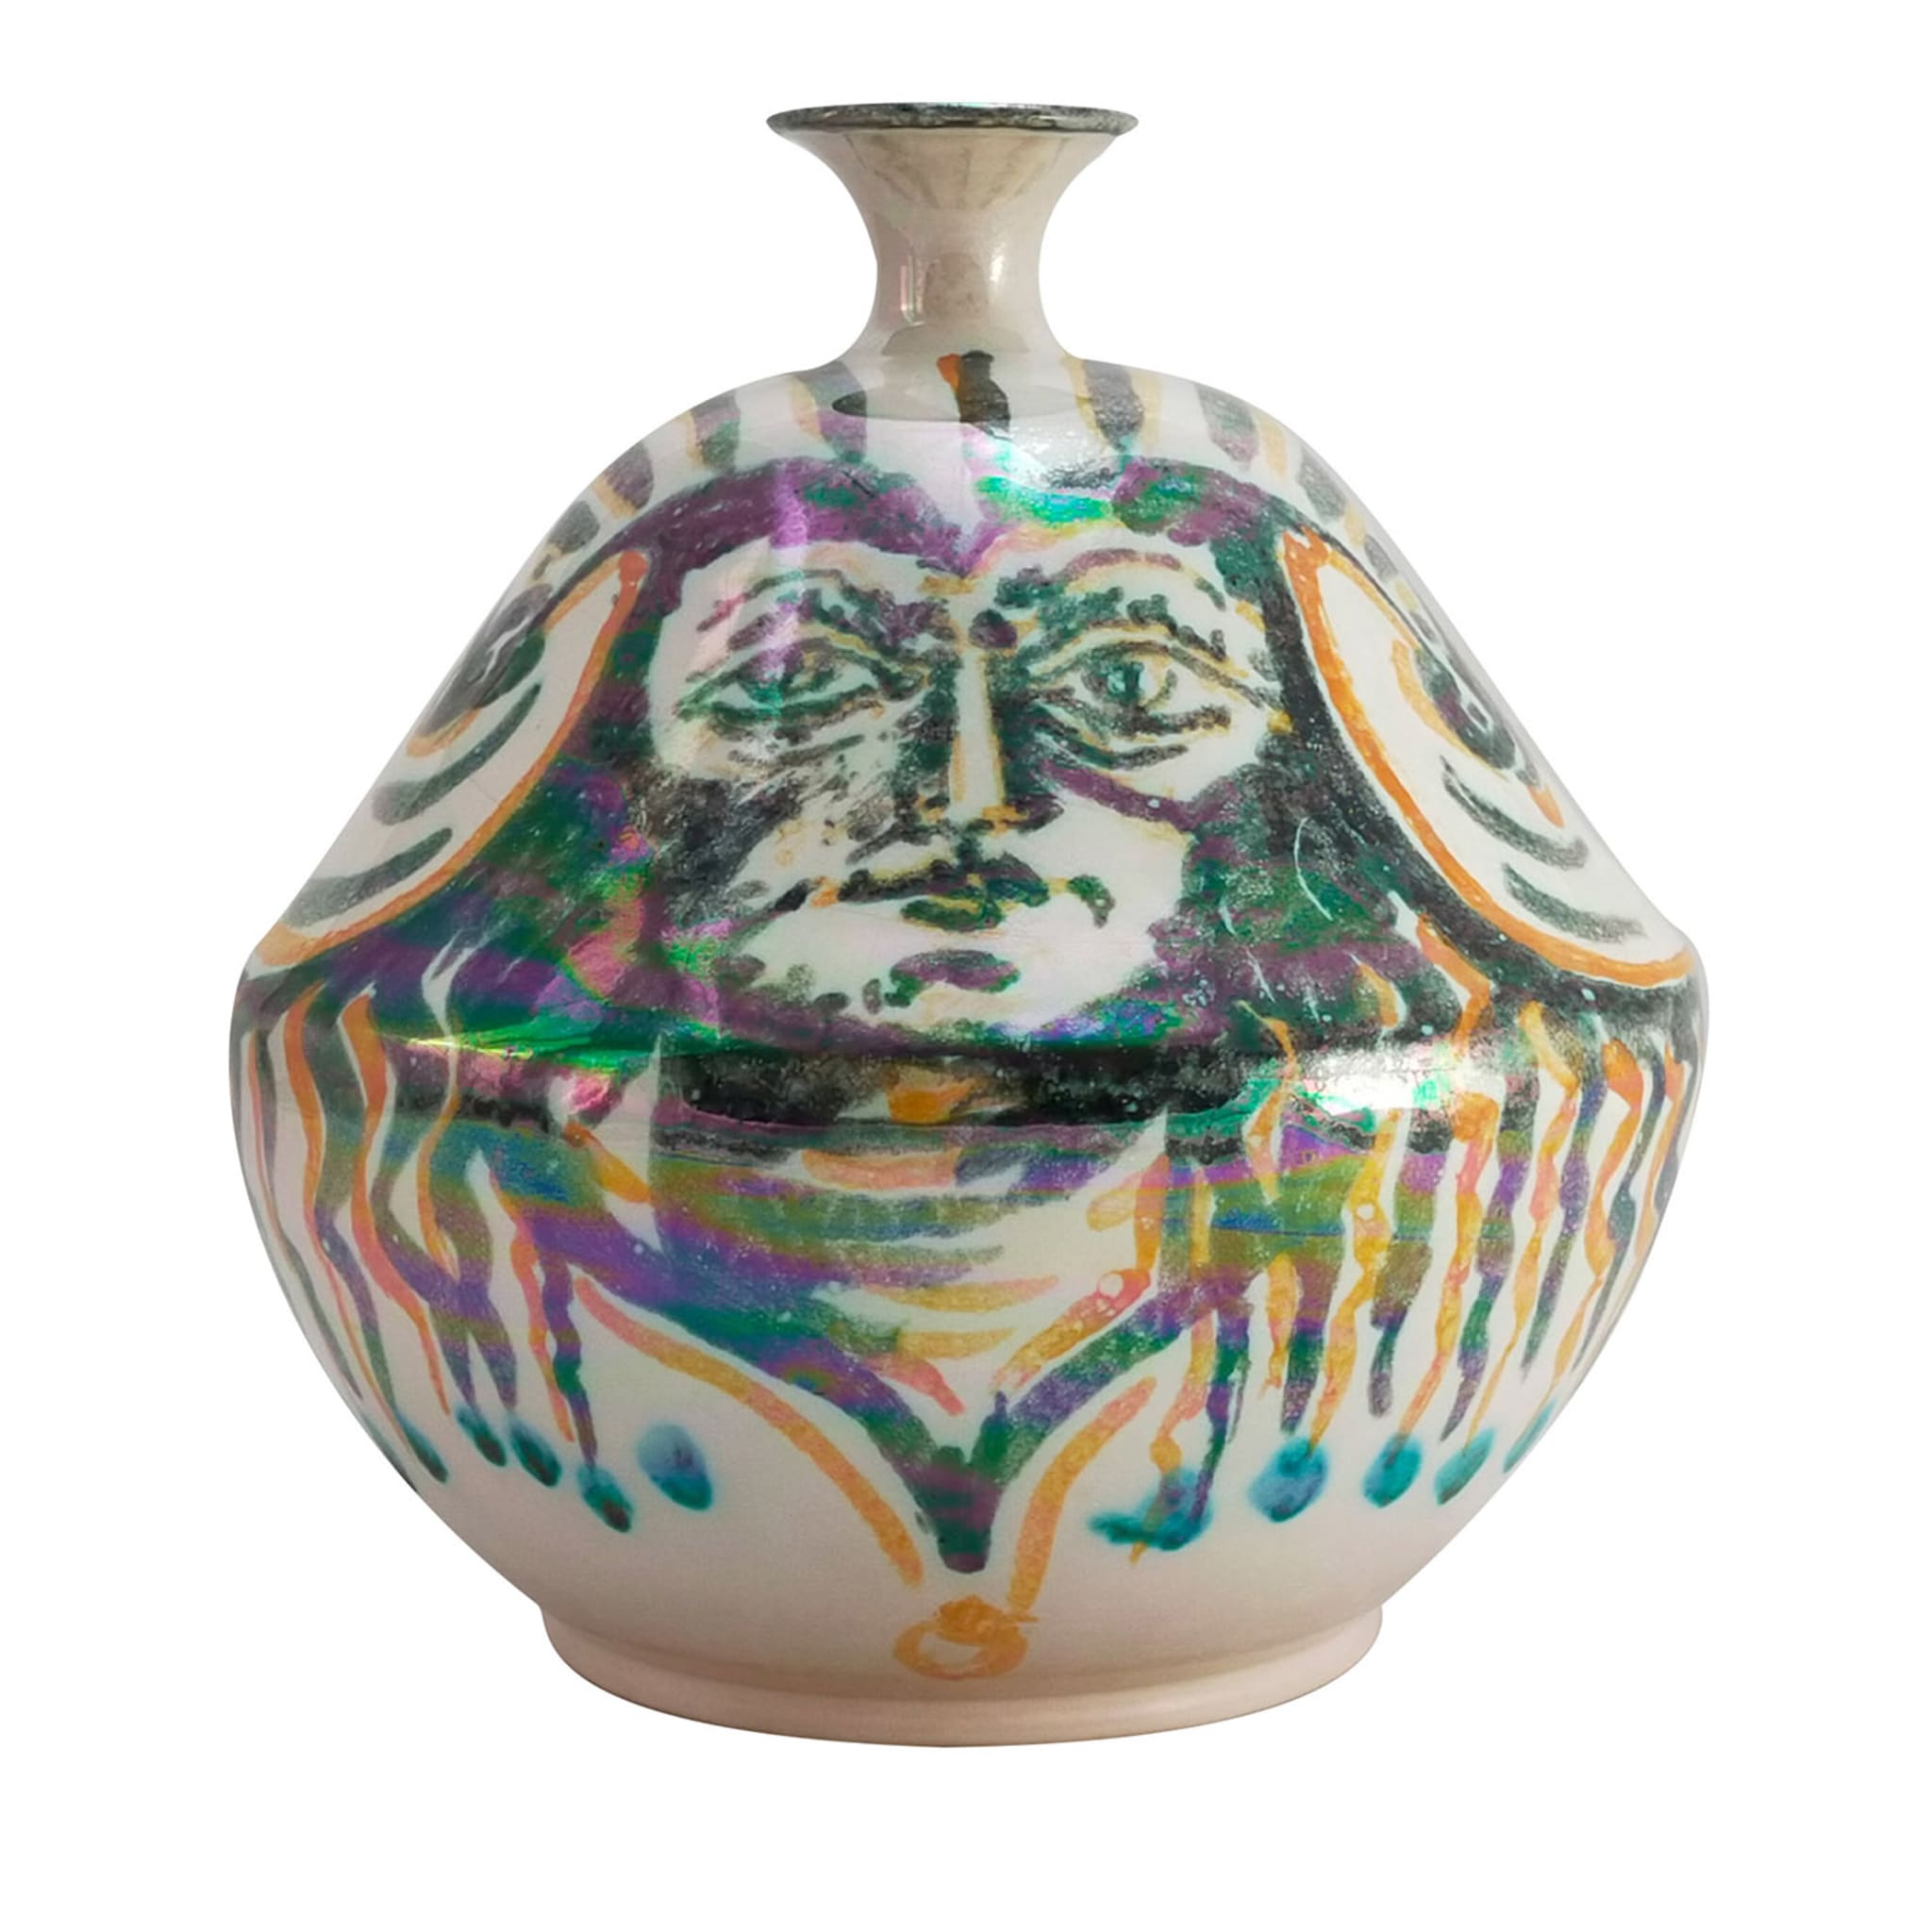 Vase à tige unique en terre cuite polychrome et irisée - Vue principale